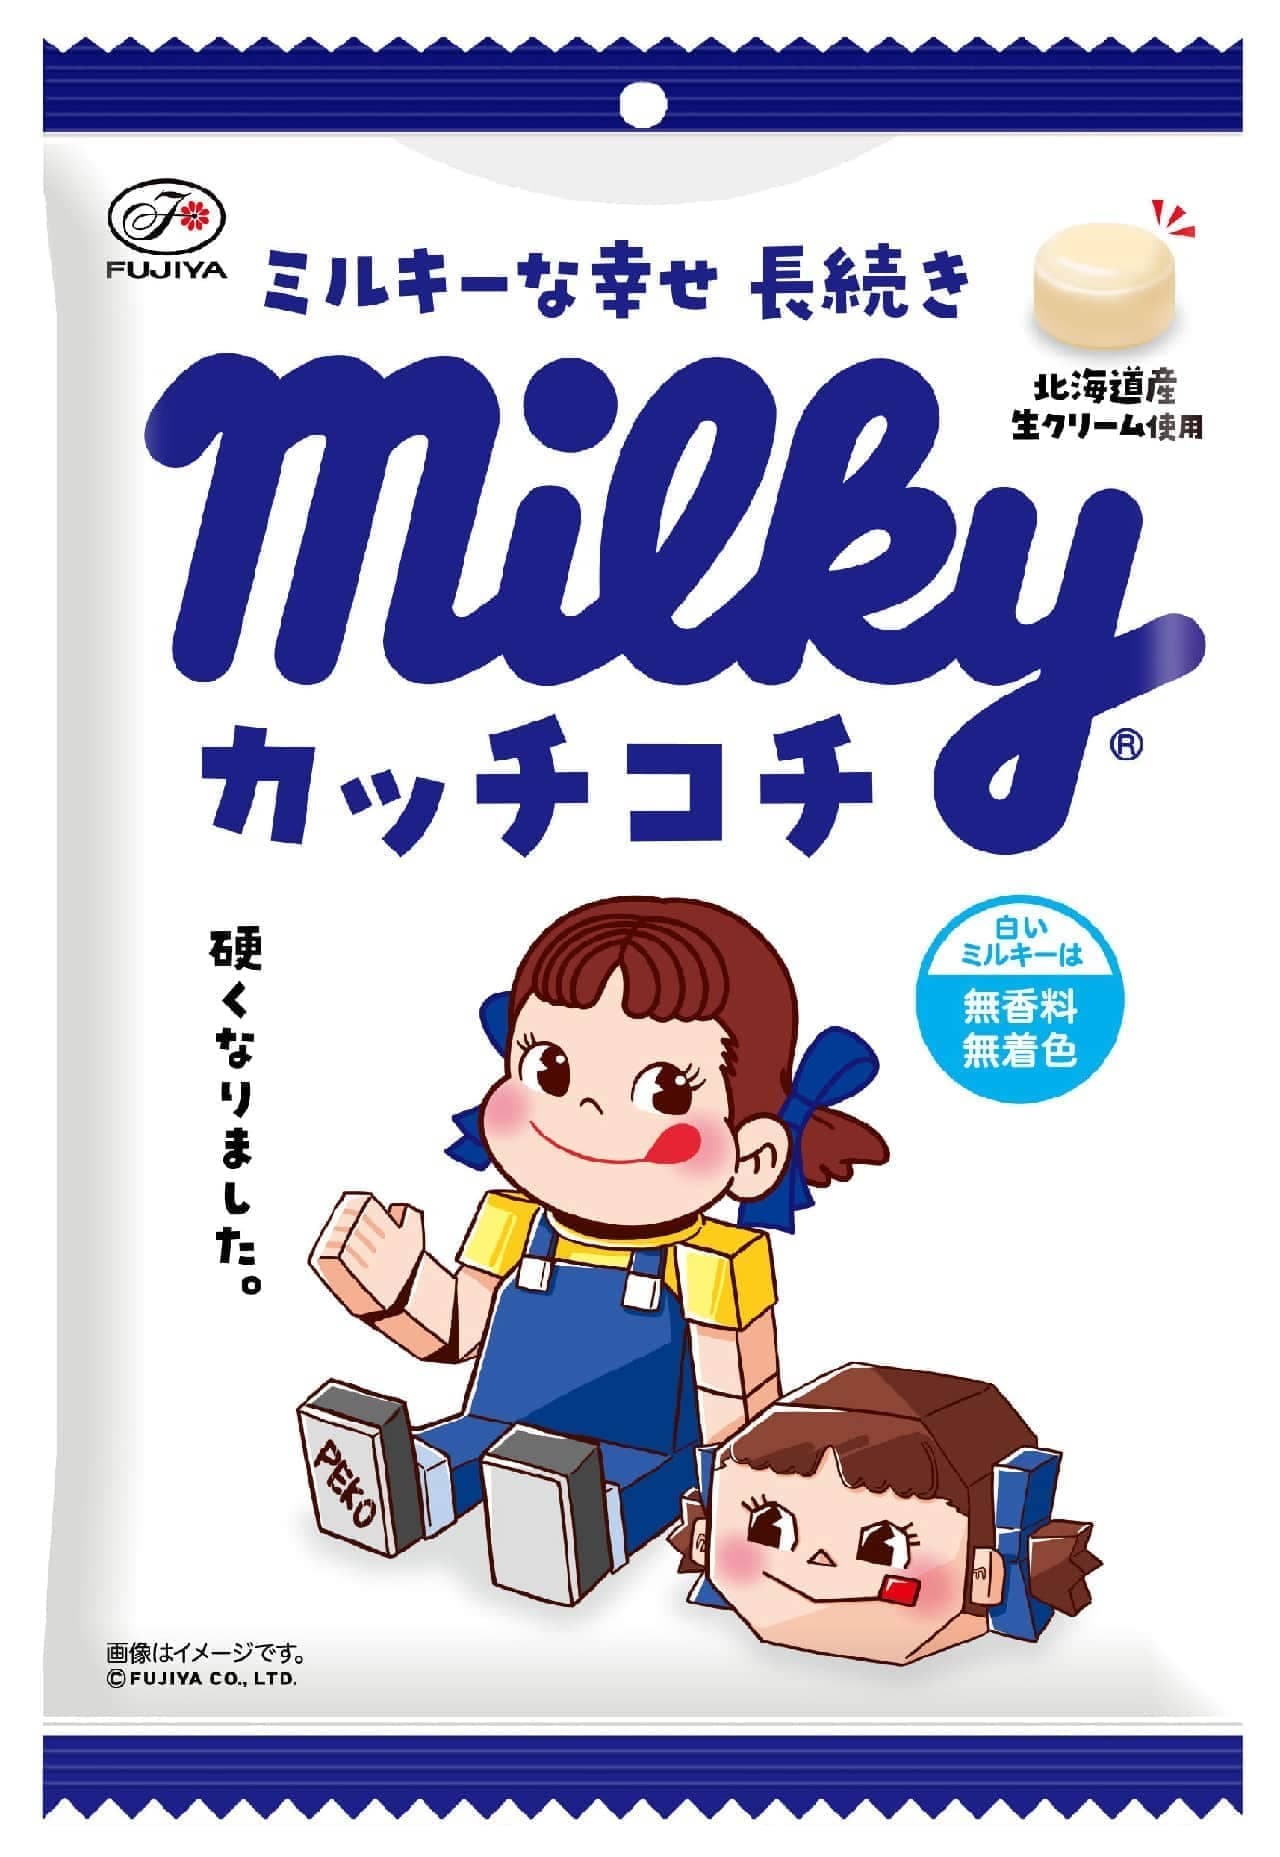 Fujiya "Katchkochi Milky Bag"